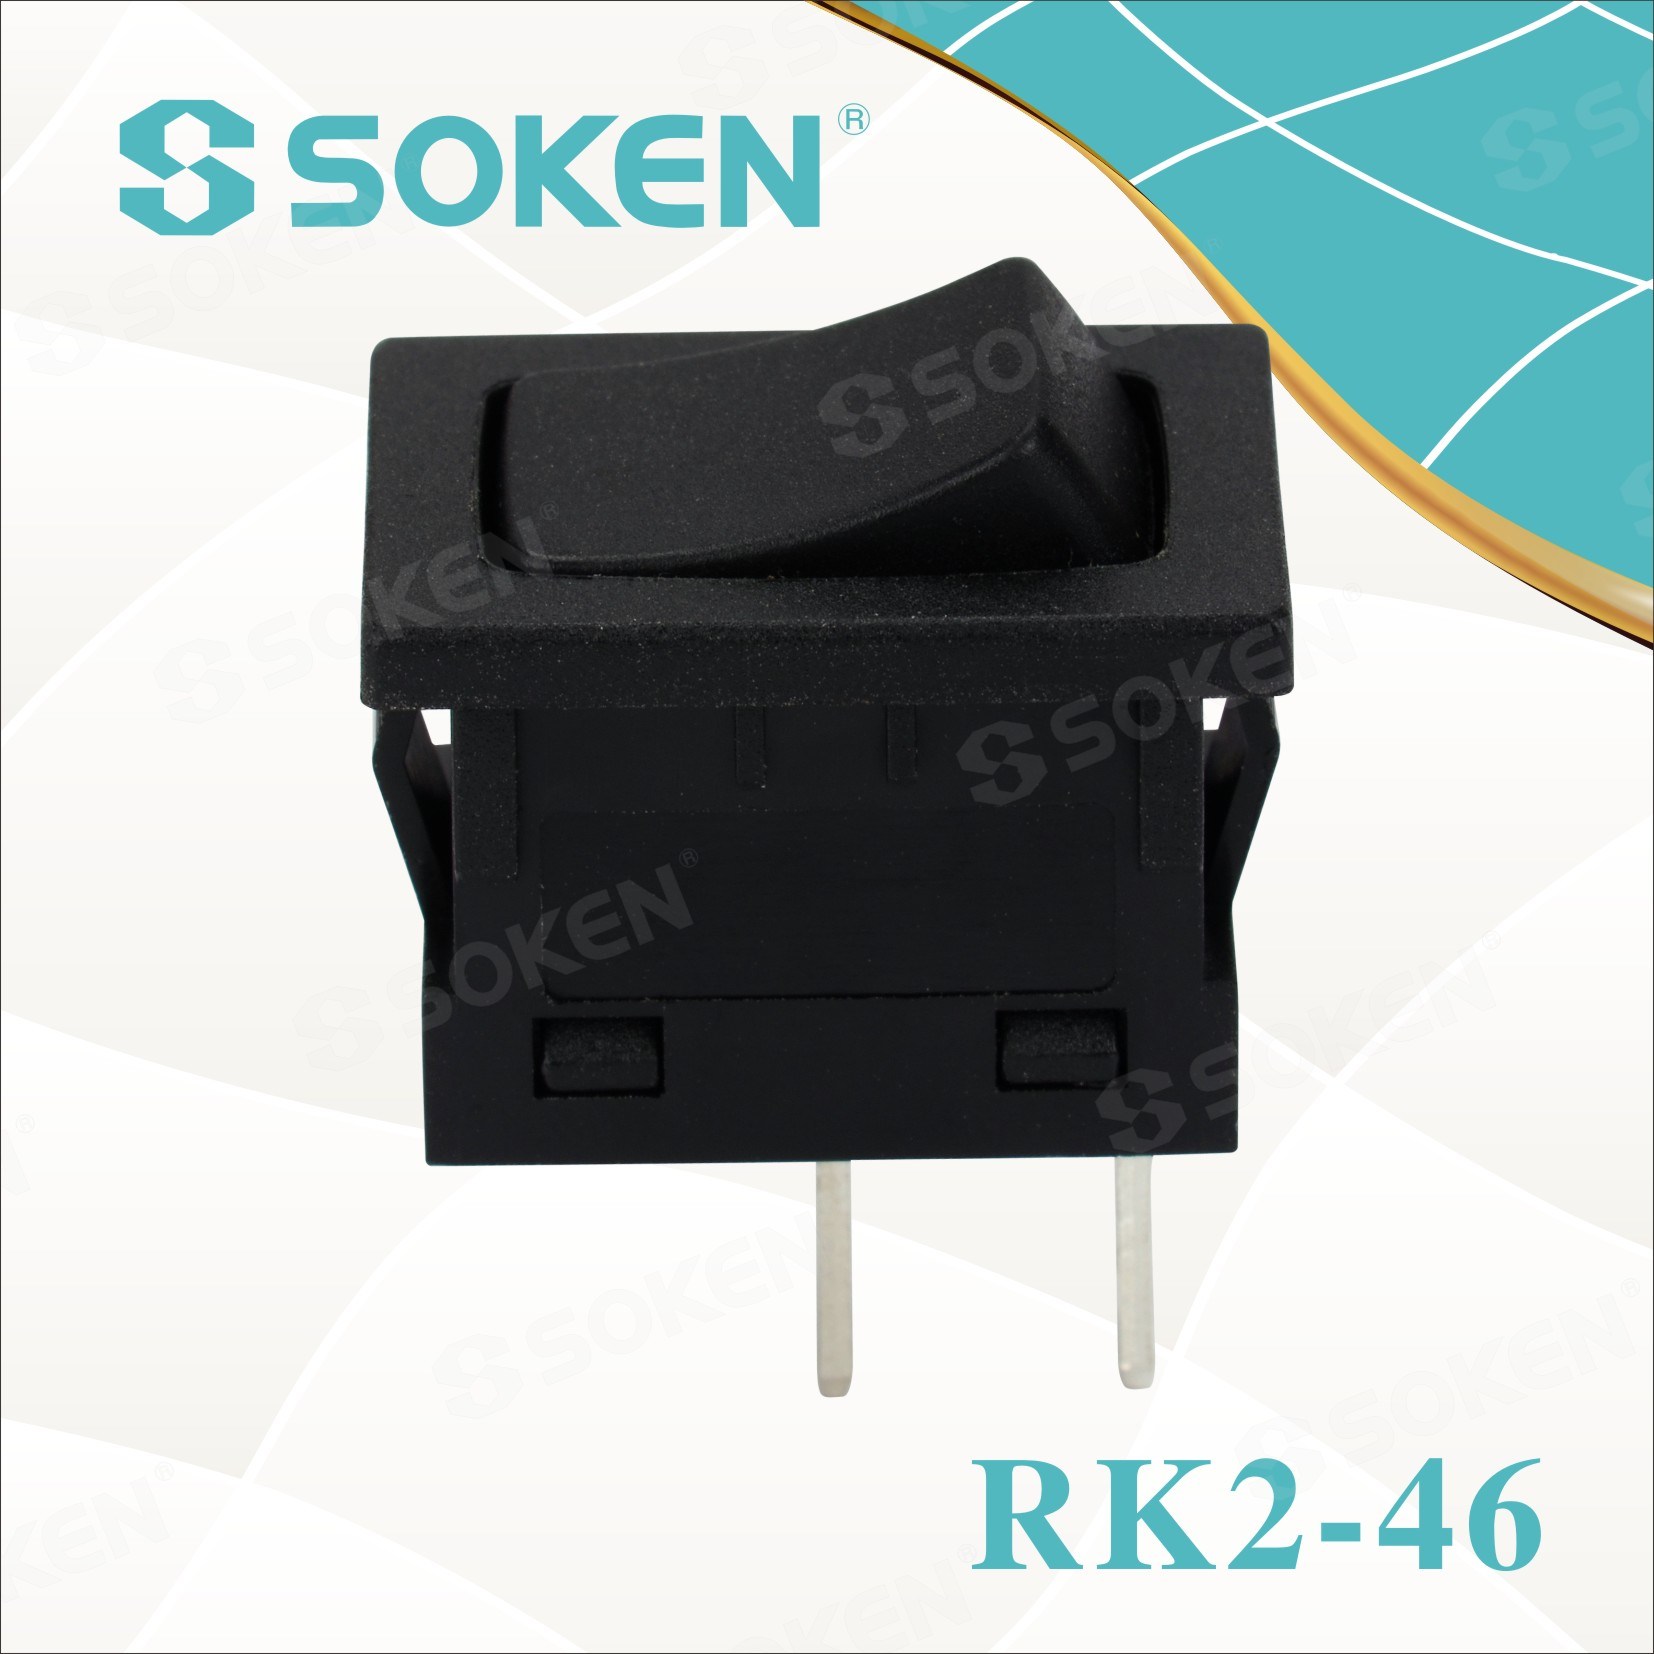 Soken-Mini-Rocker-Switch2468